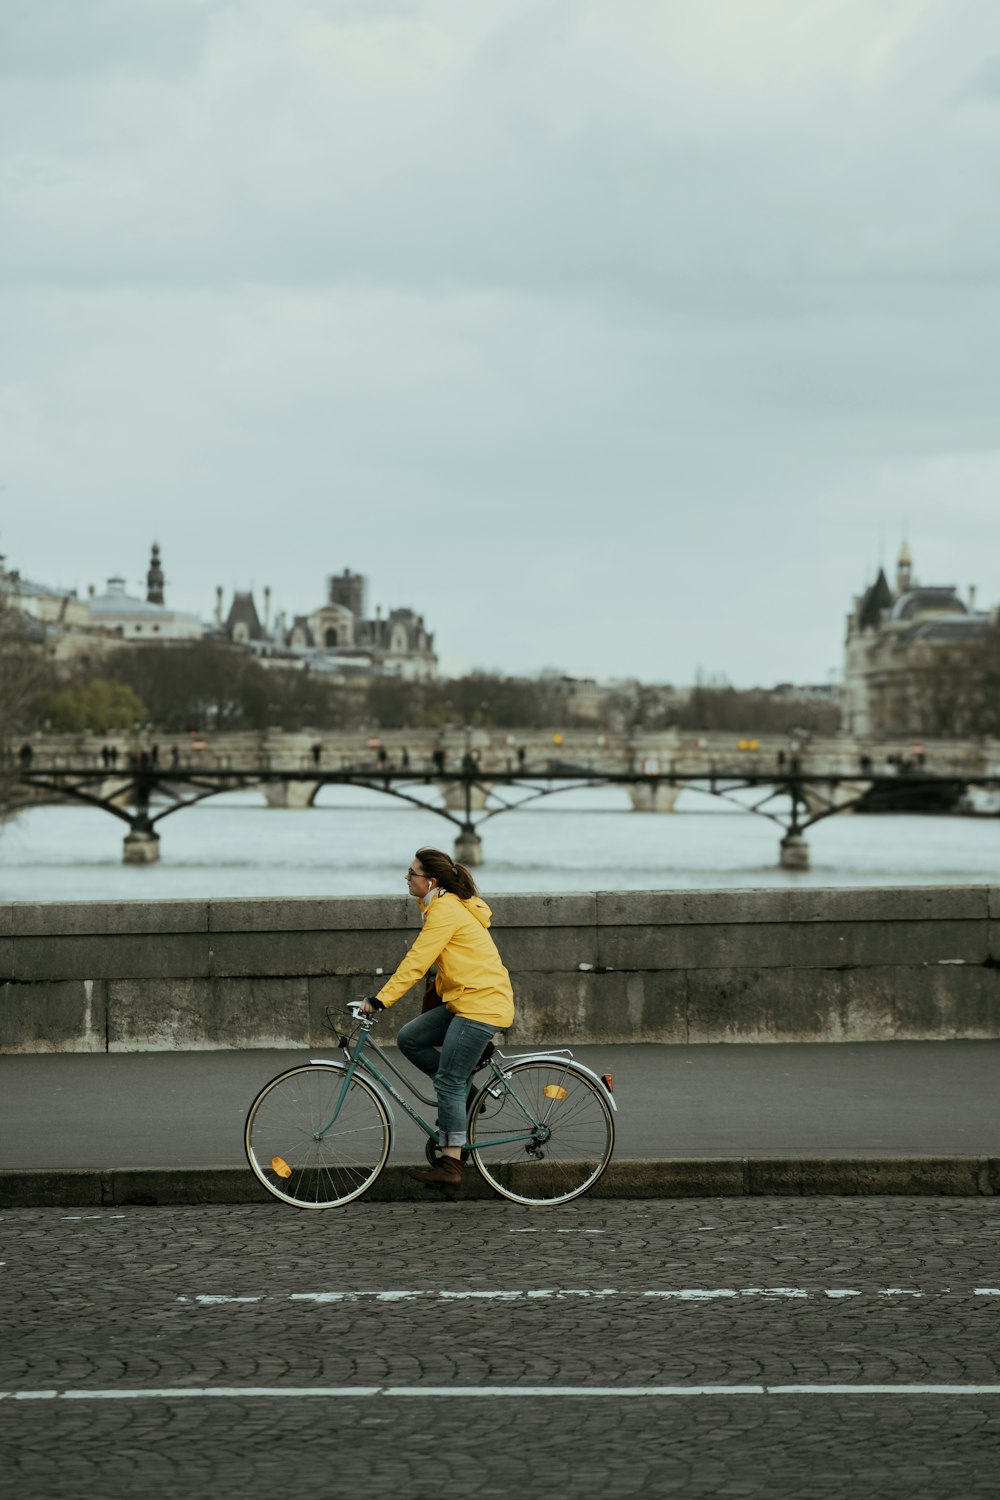 man in yellow shirt riding bicycle on bridge during daytime